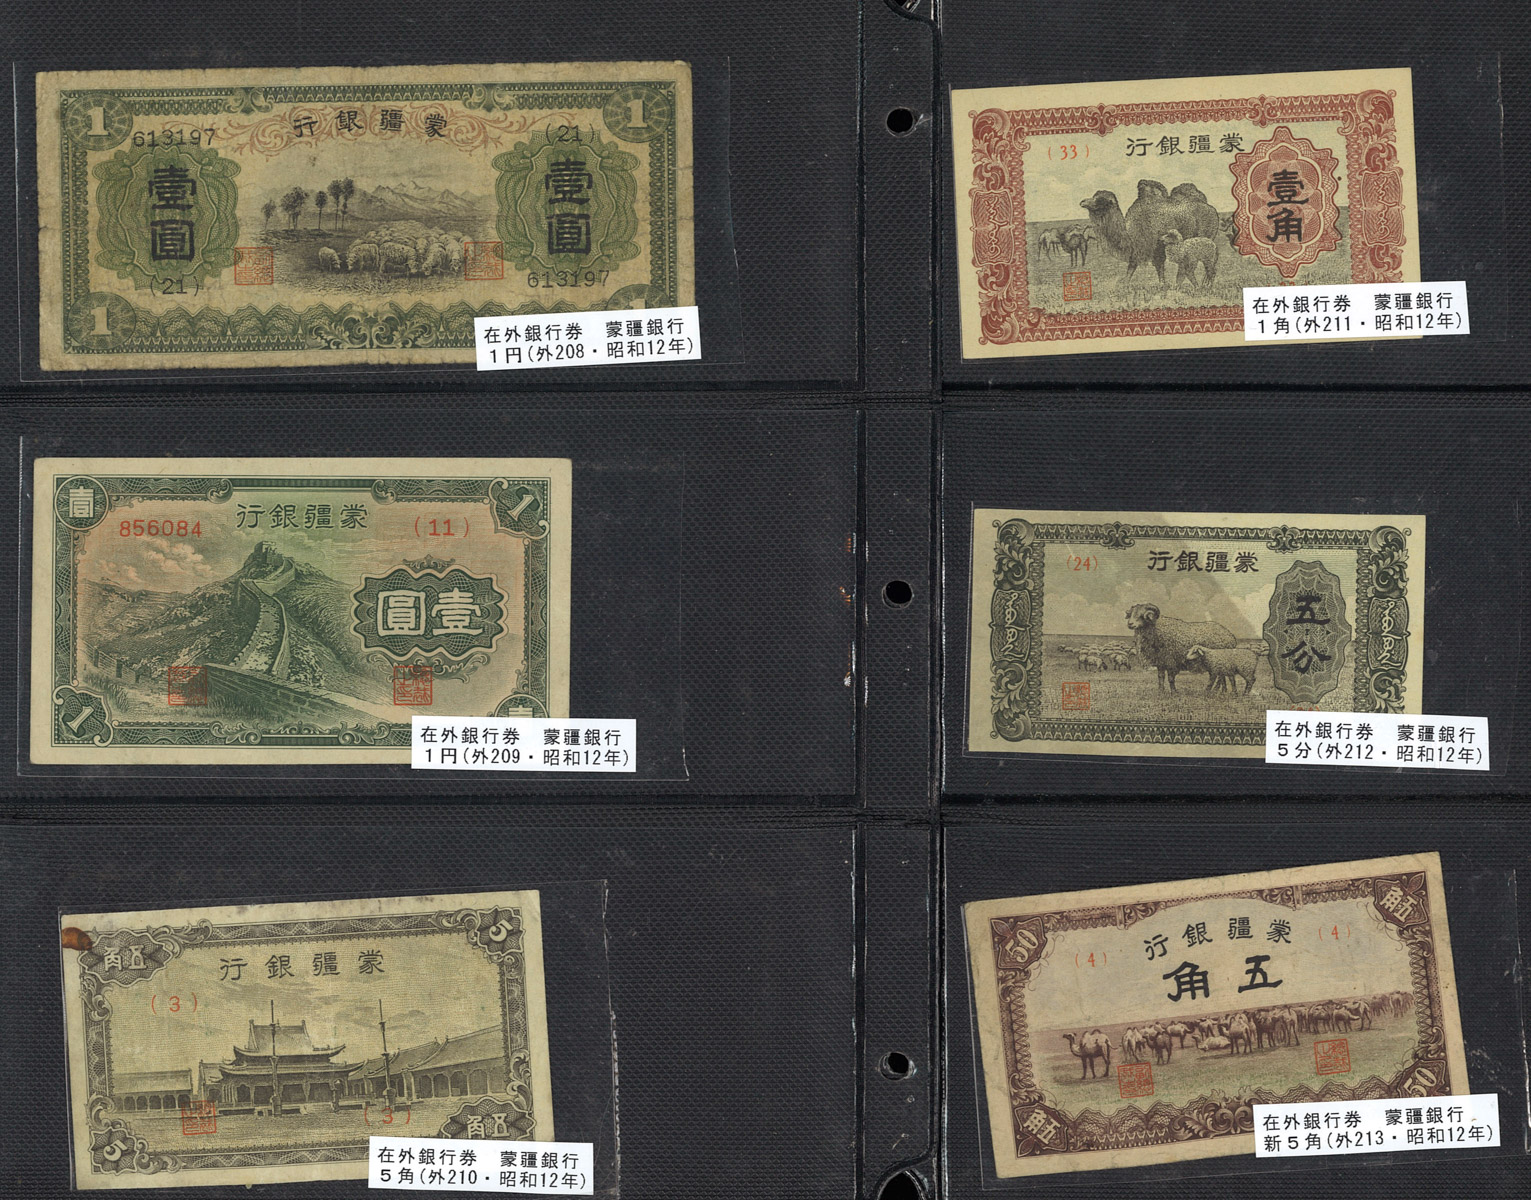 貨幣博物館 | 紙幣 Banknotes 蒙疆銀行 五分